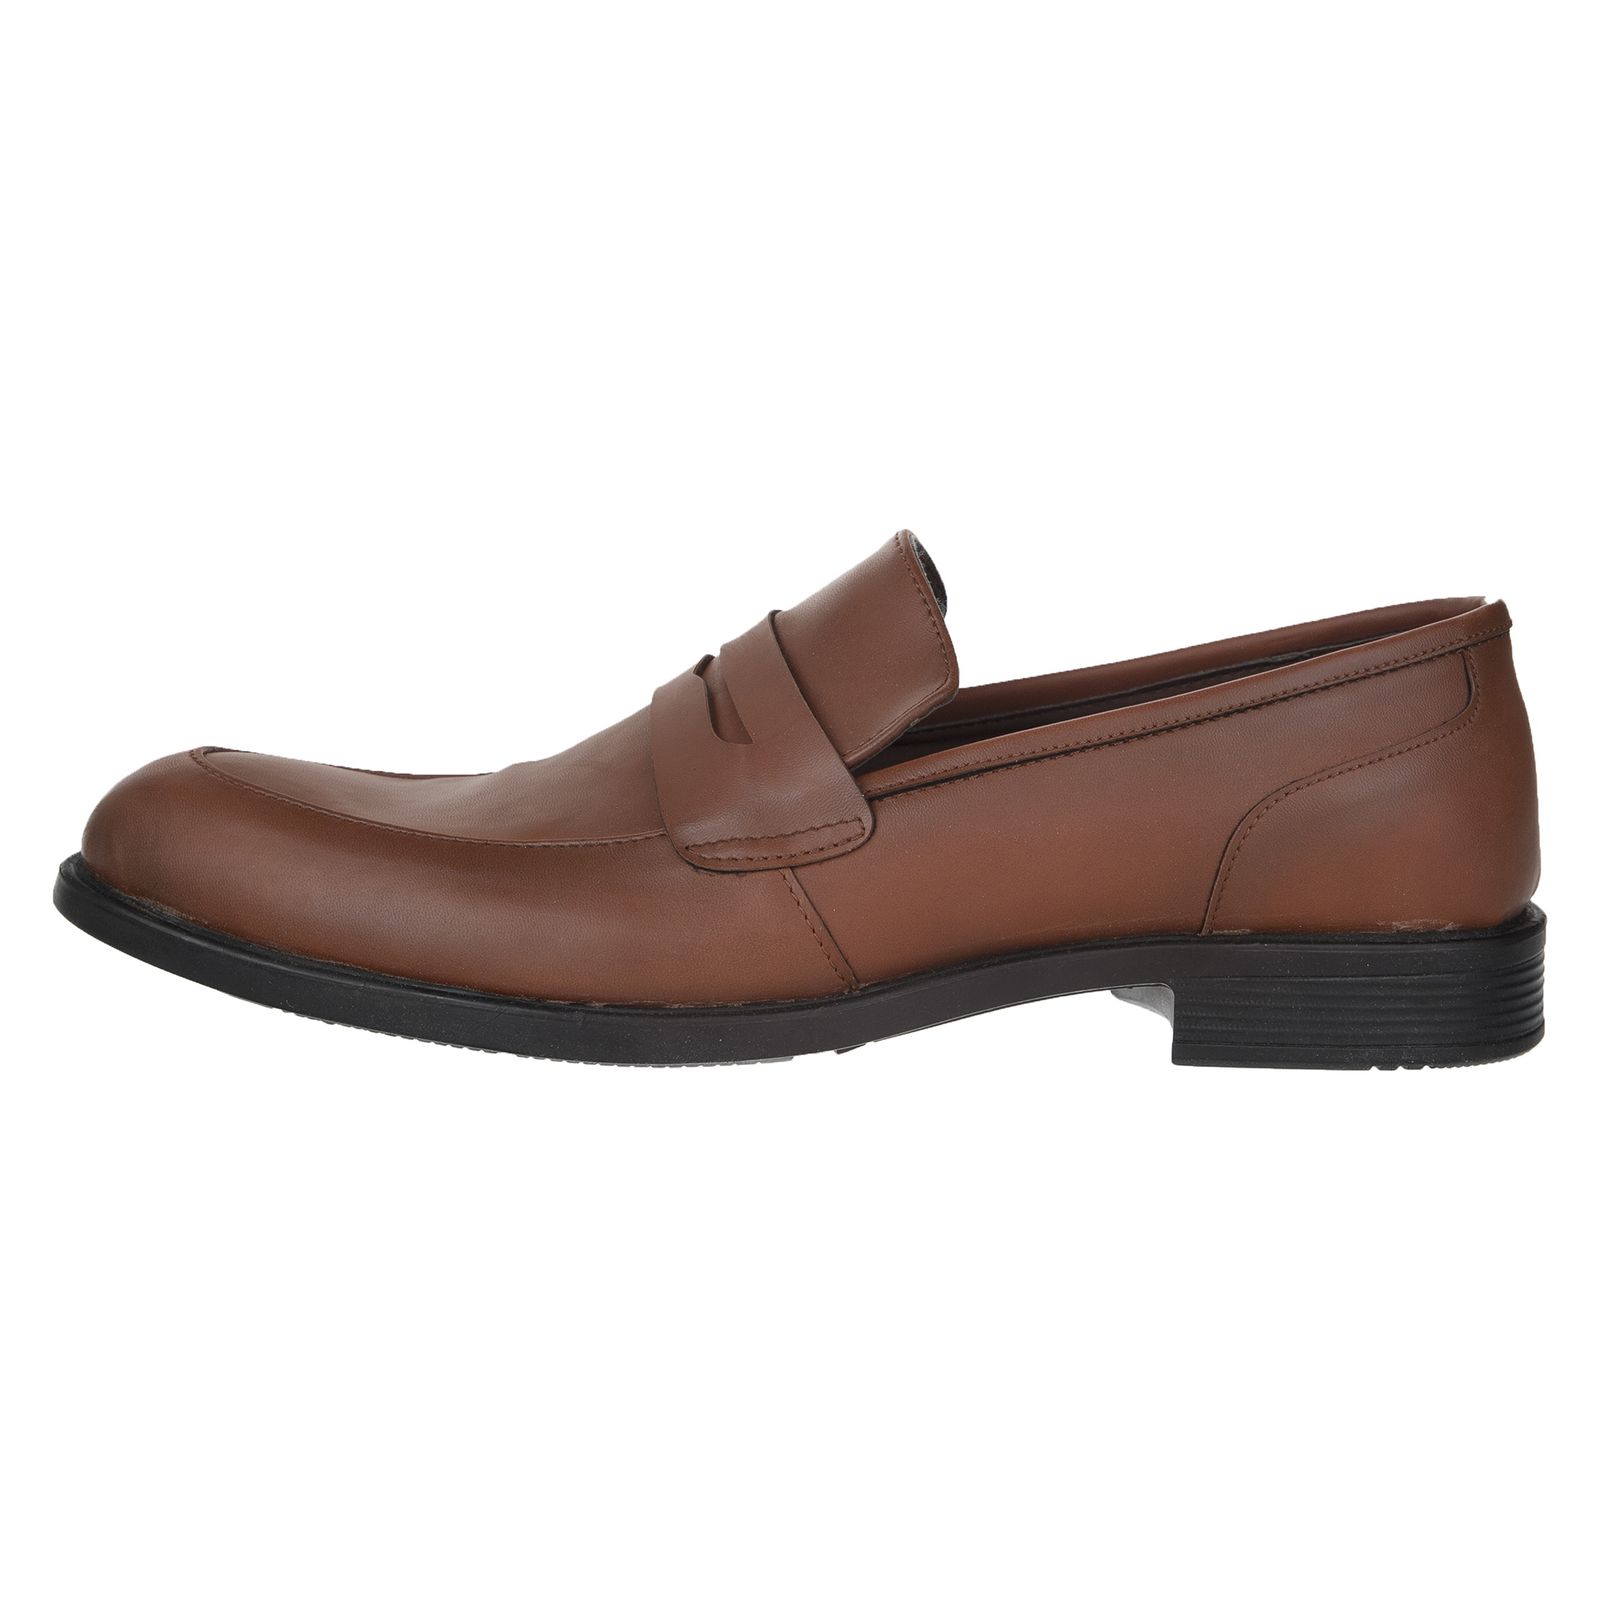 کفش مردانه پولاریس مدل 100243628-122 - قهوه ای - 1